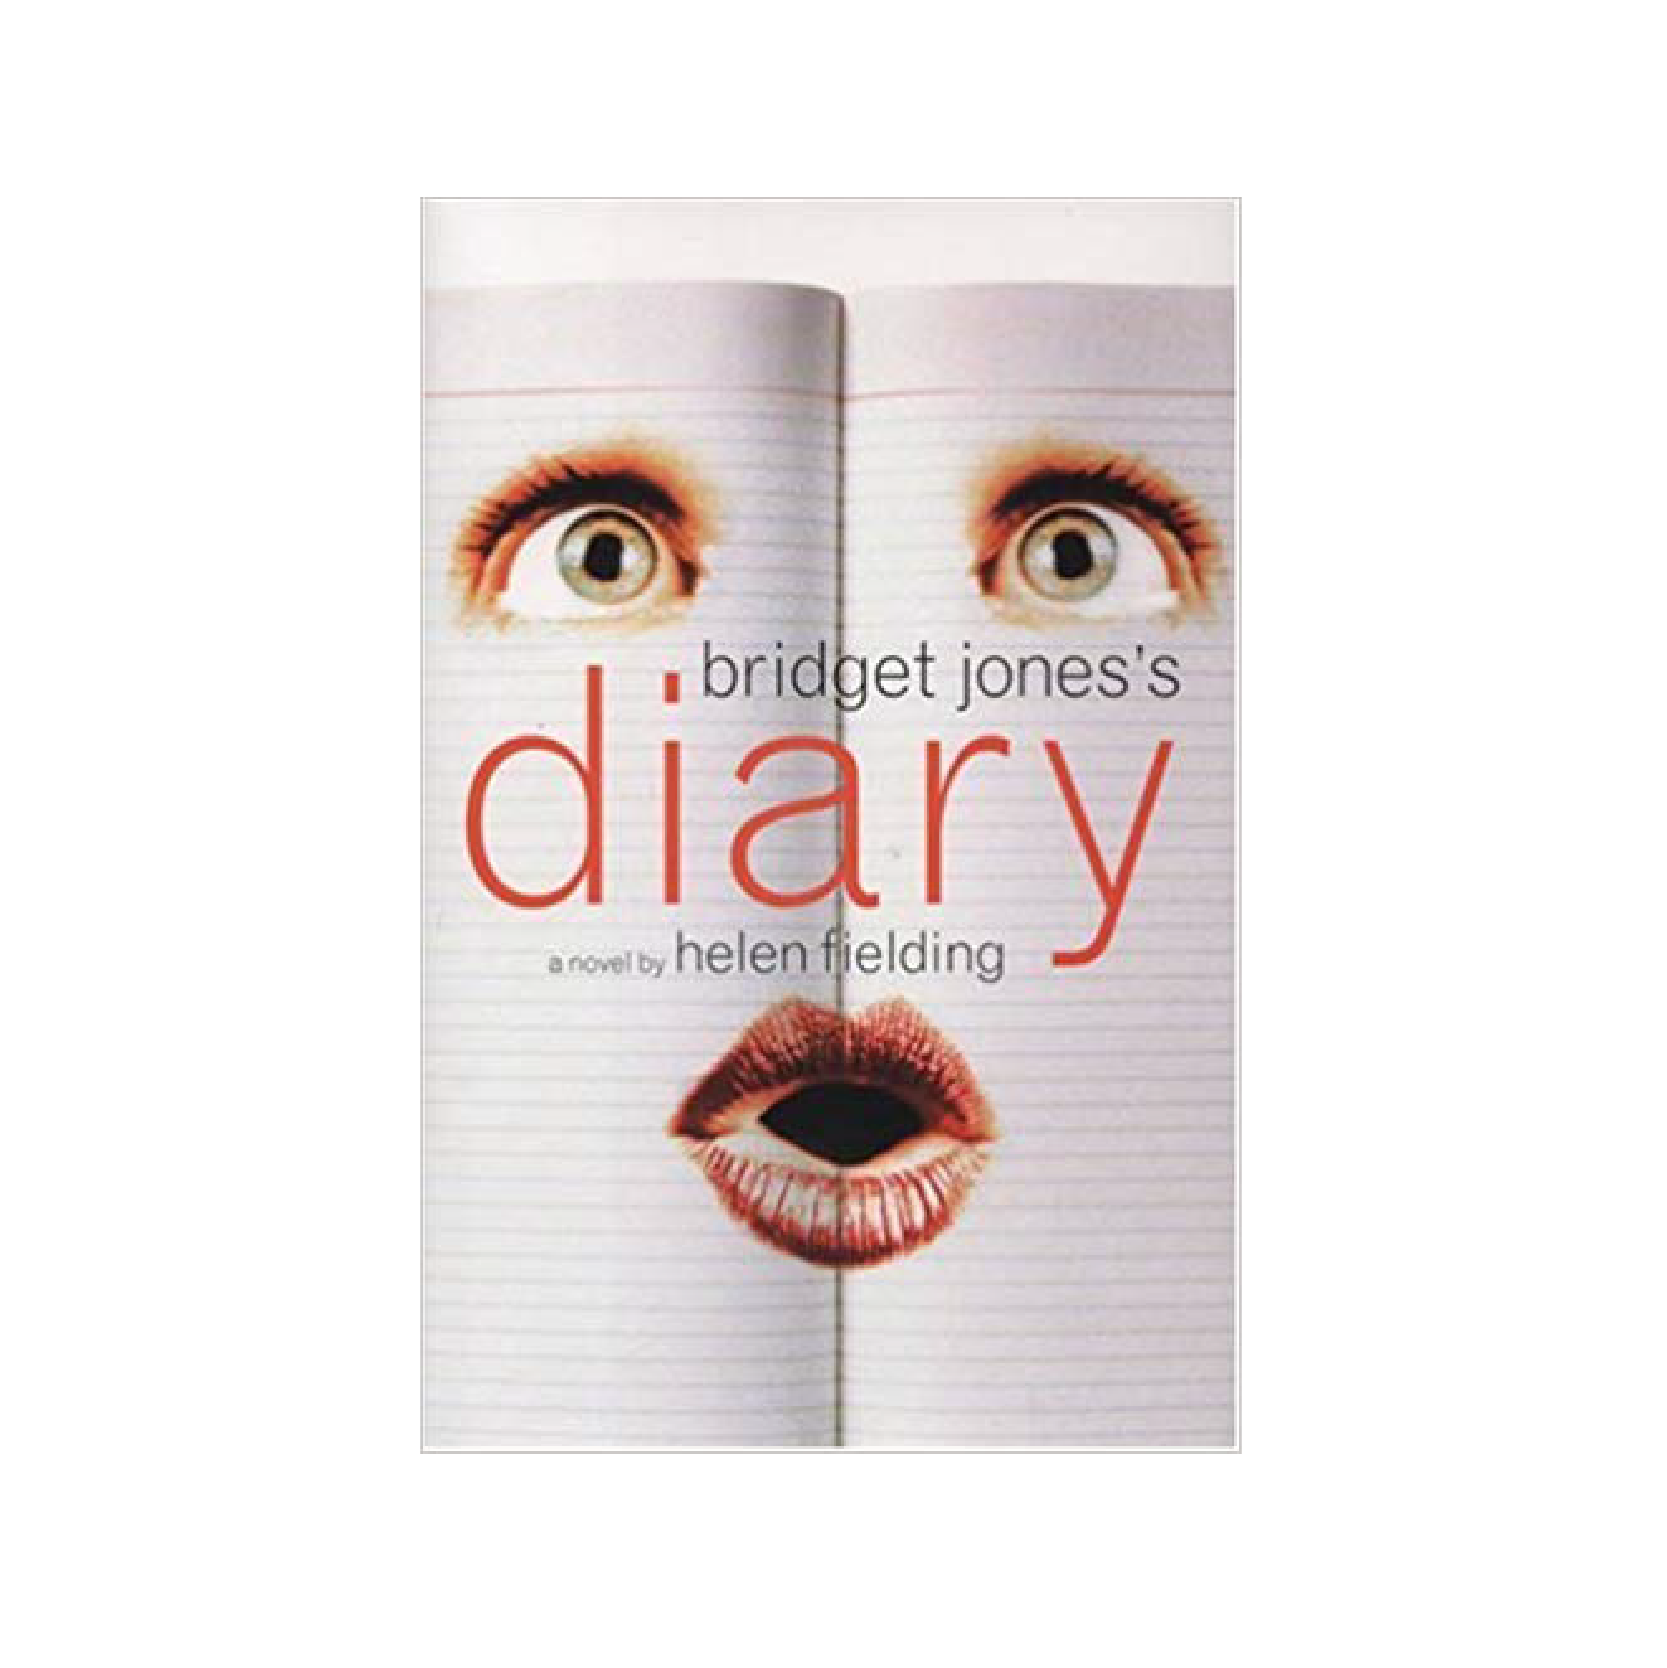 “Bridget Jones’s Diary” by Helen Fielding 